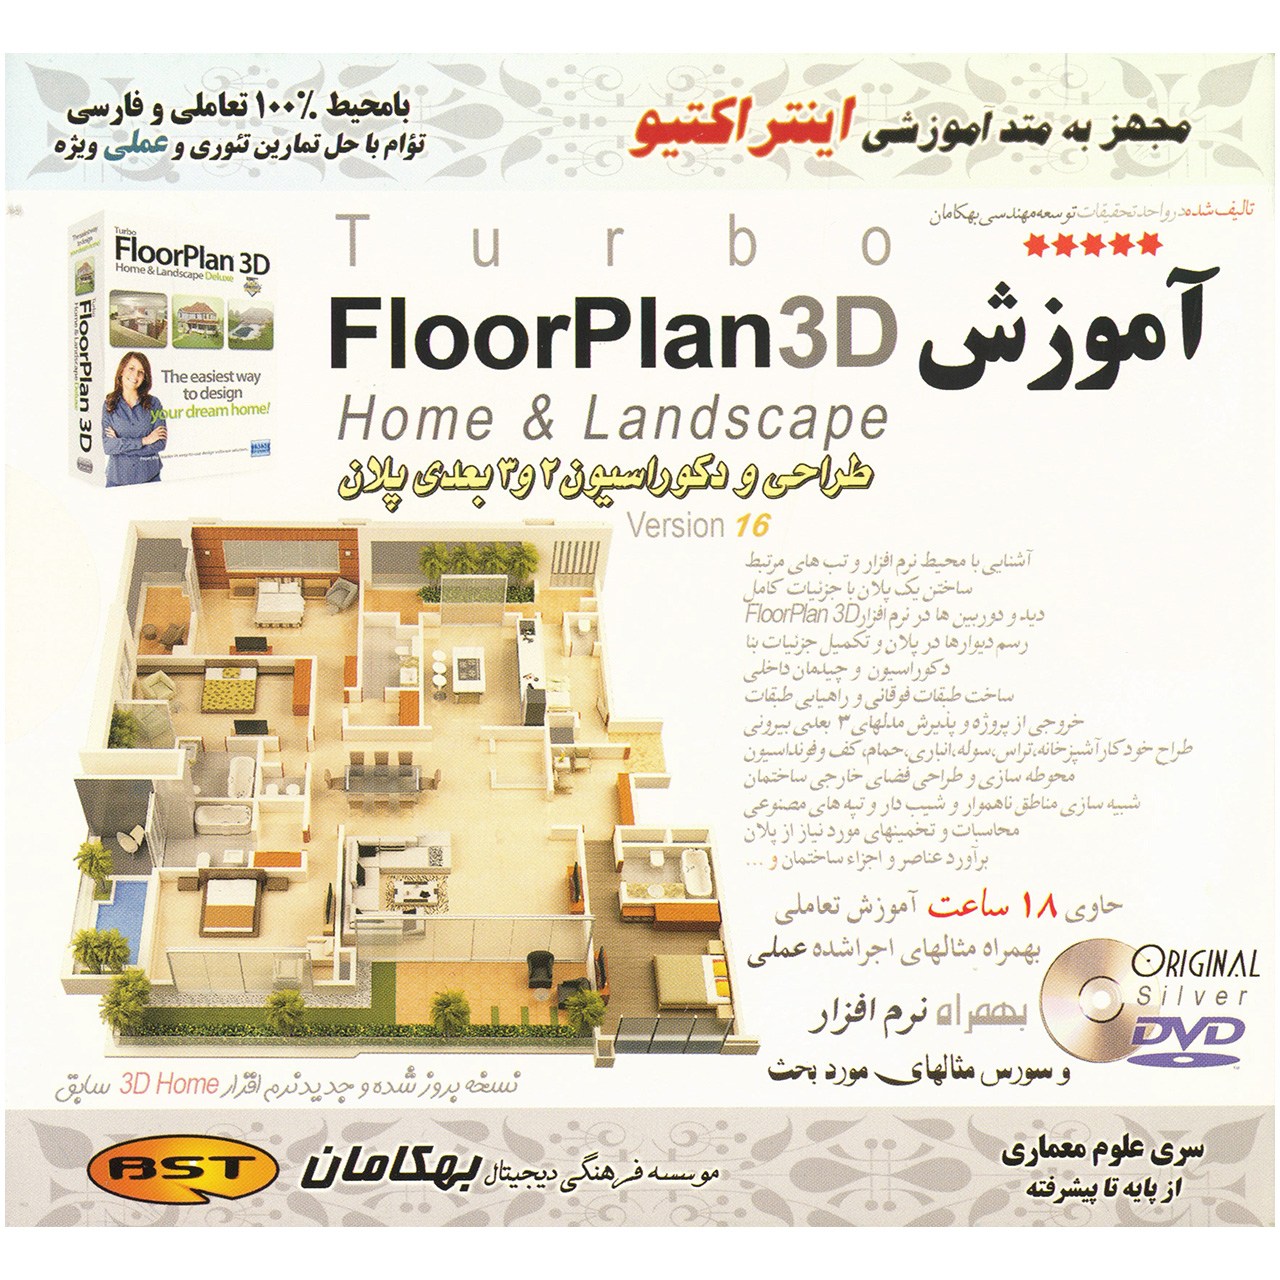 نرم افزار آموزش Floor Plan 3D نشر بهکامان